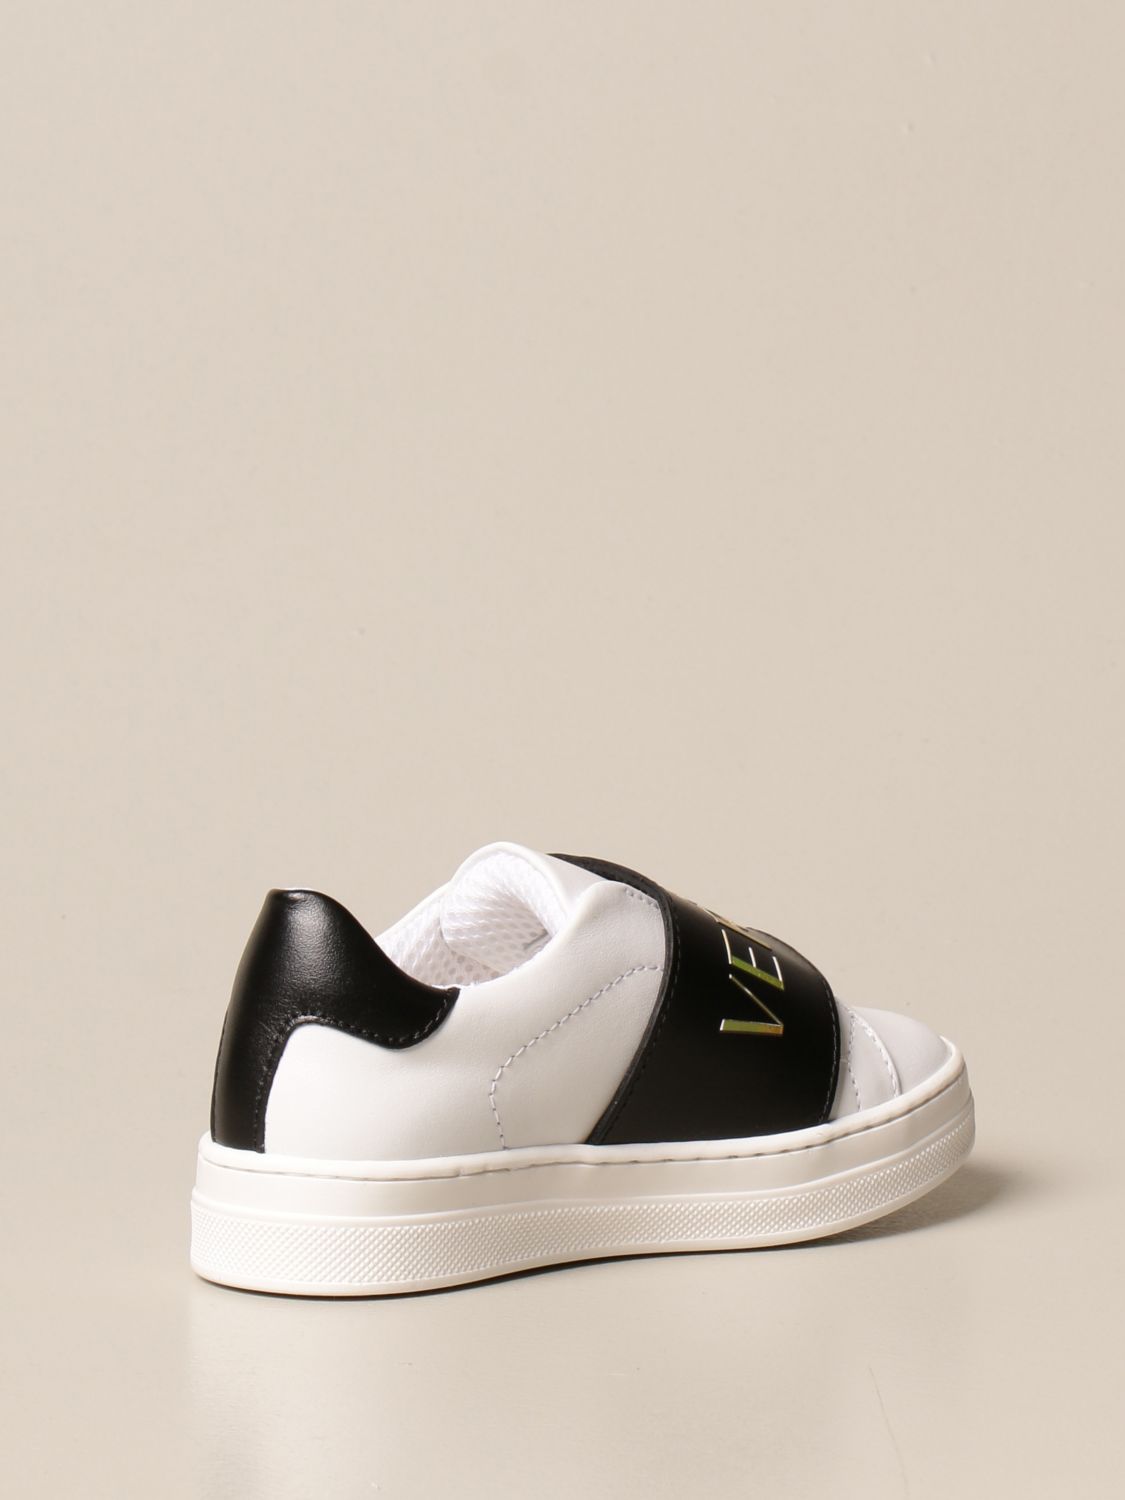 versace infant shoes